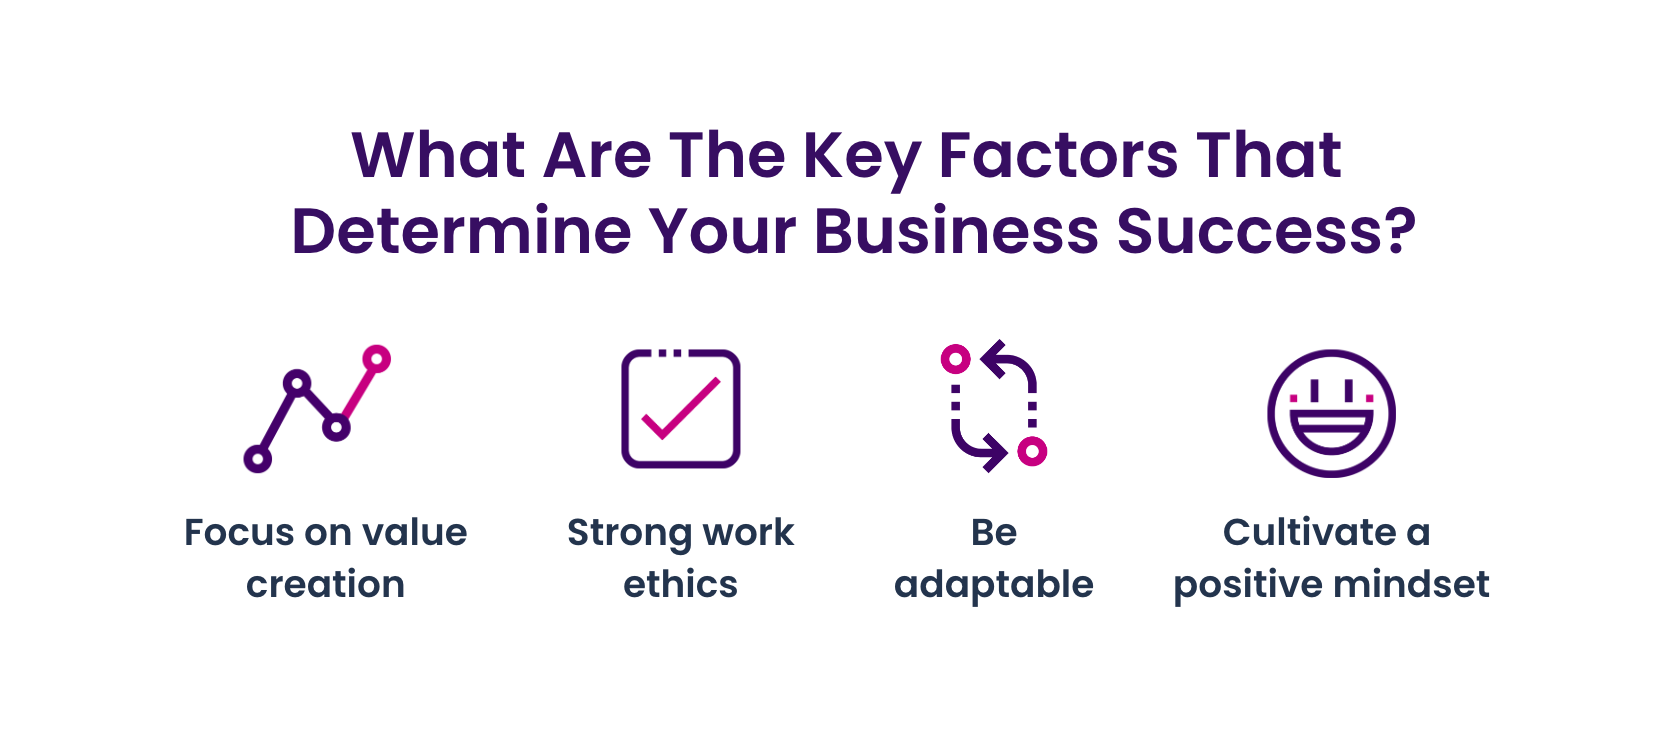 Key factors that determine your business success